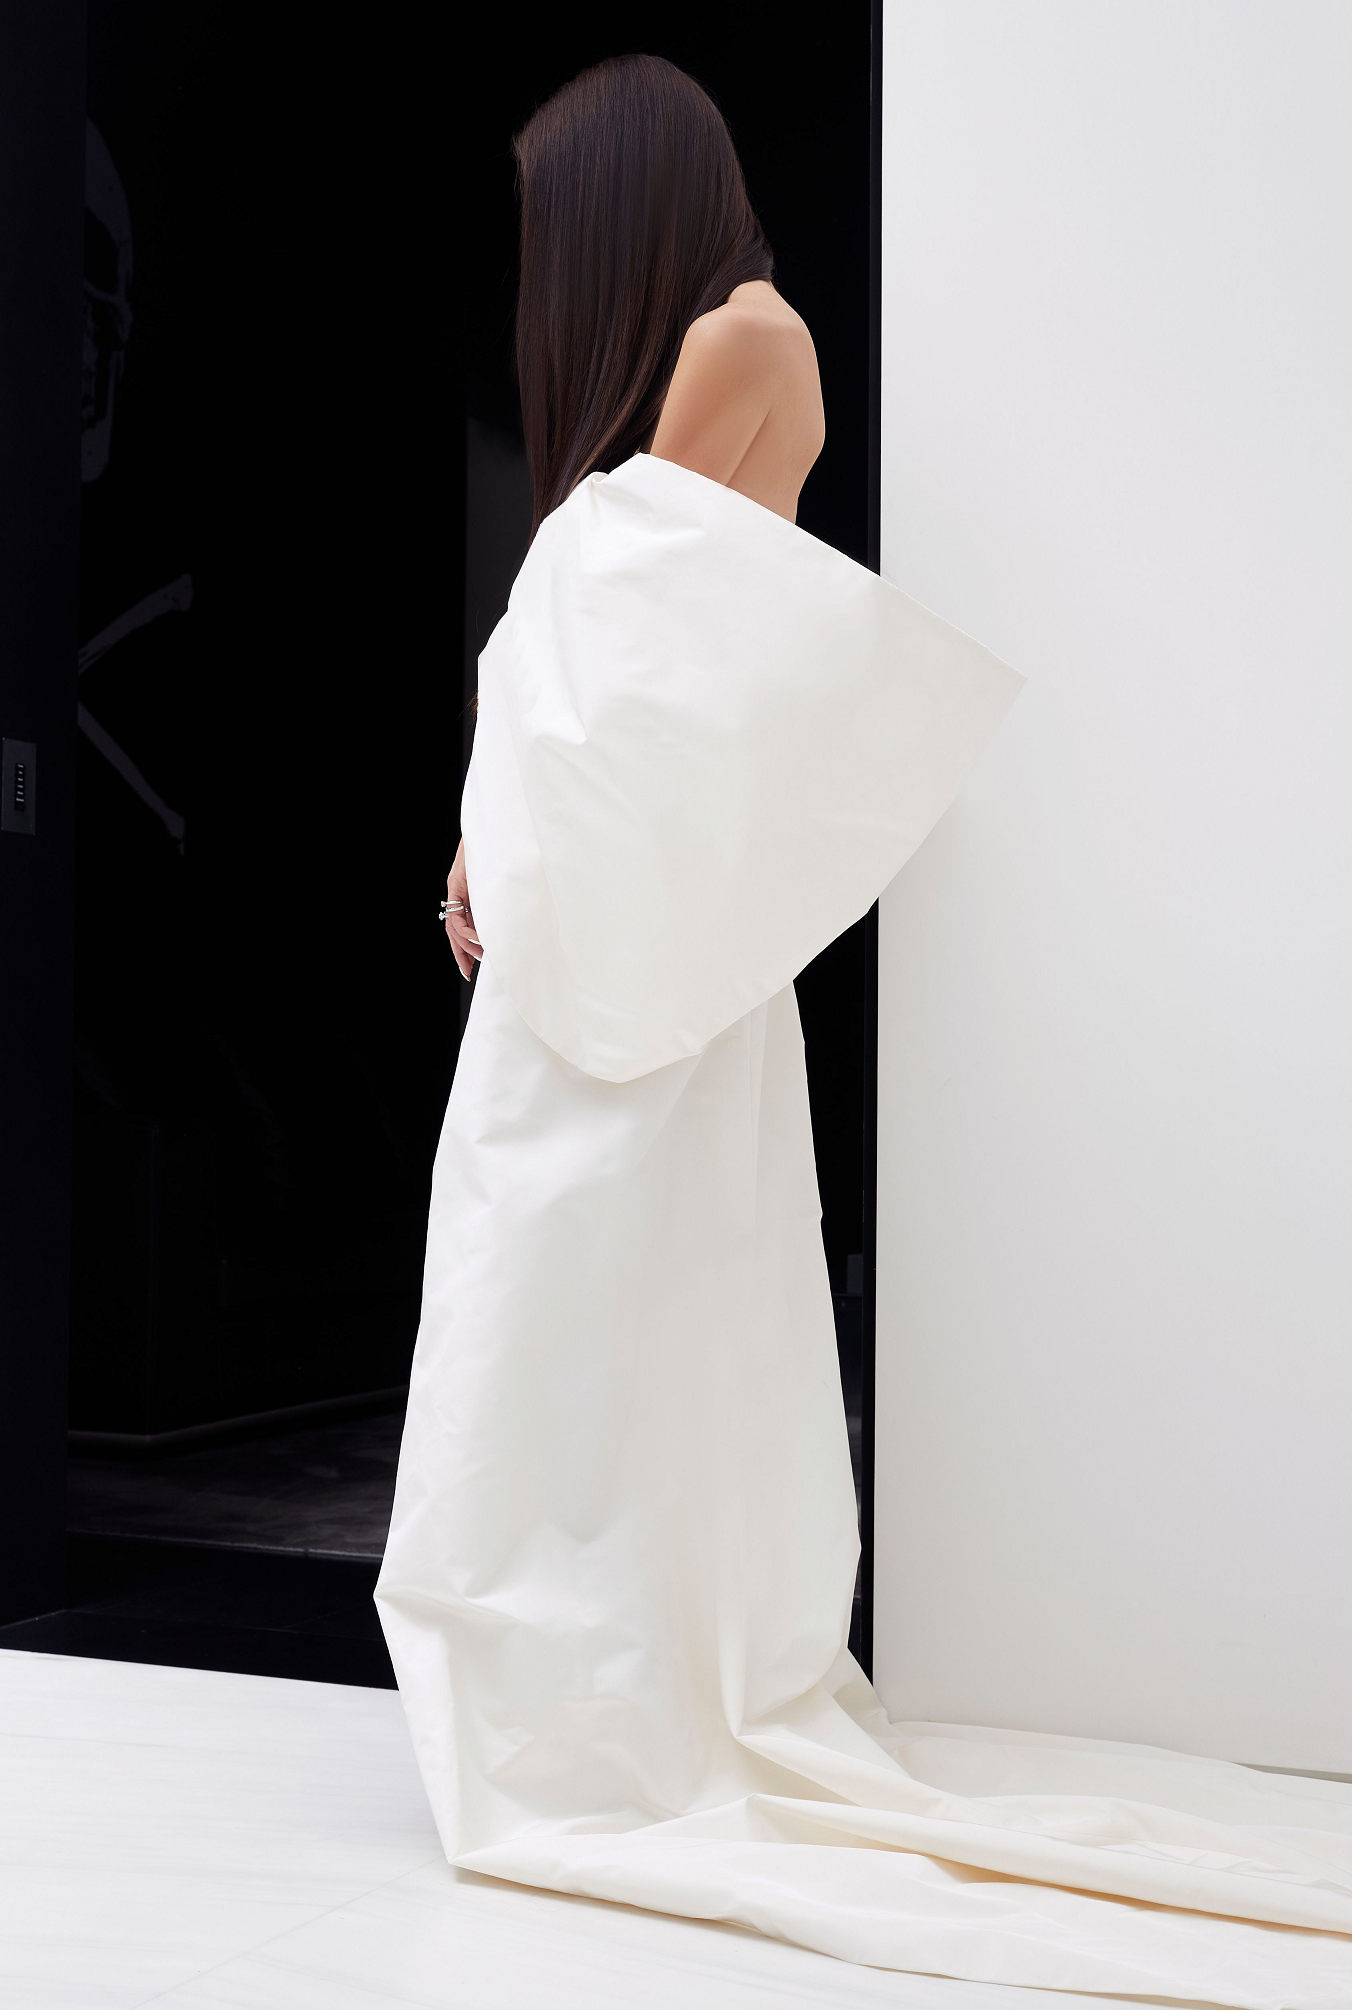 消除婚纱与成衣的界限,Vera Wang预演全新时装系列。